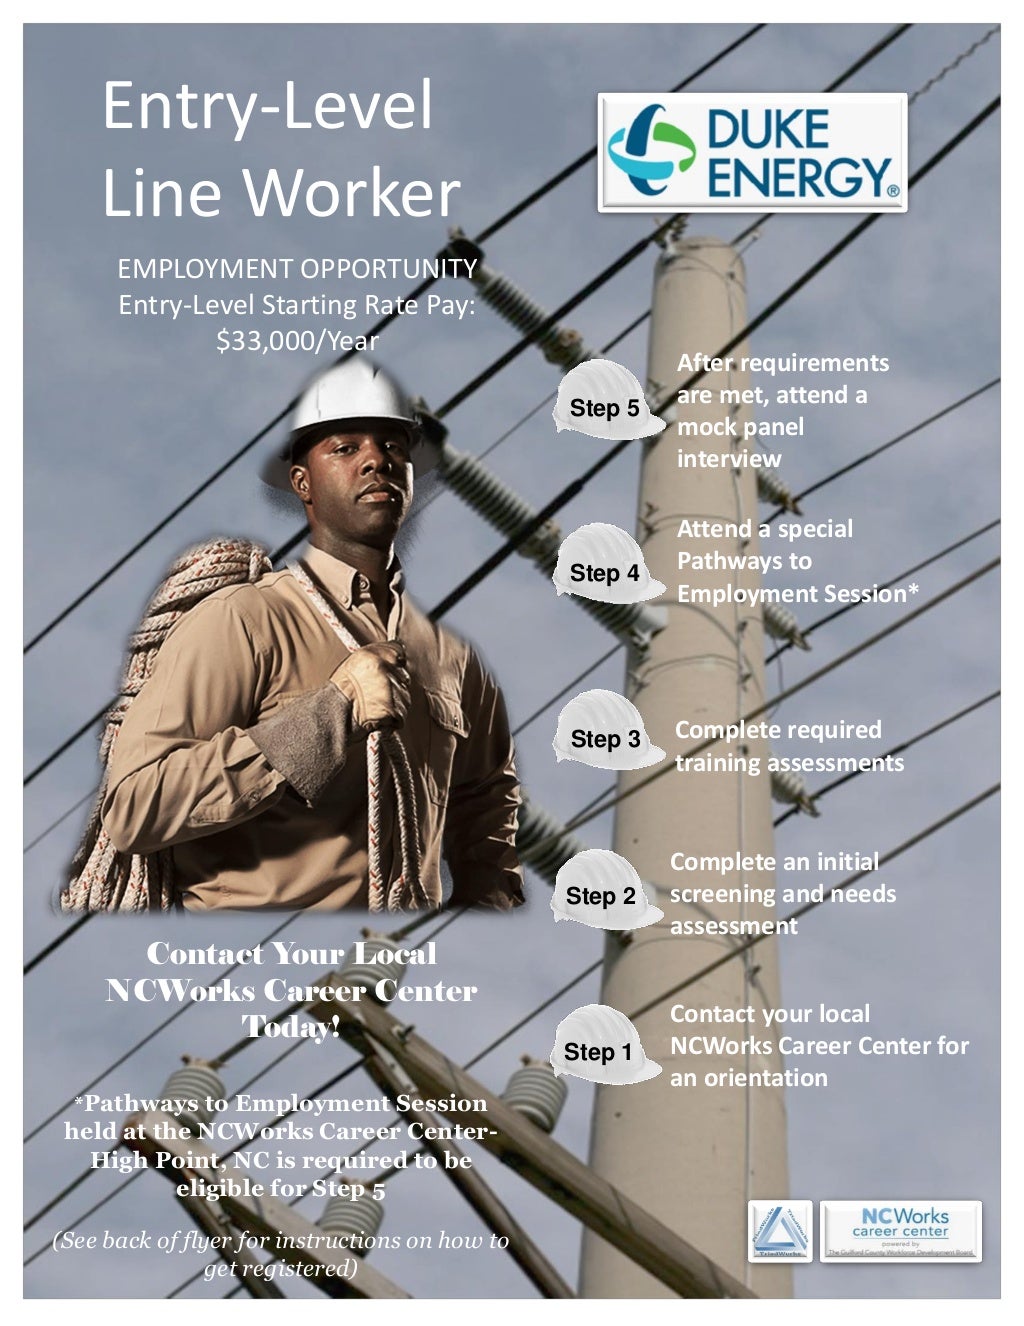 duke-energy-entry-level-line-worker